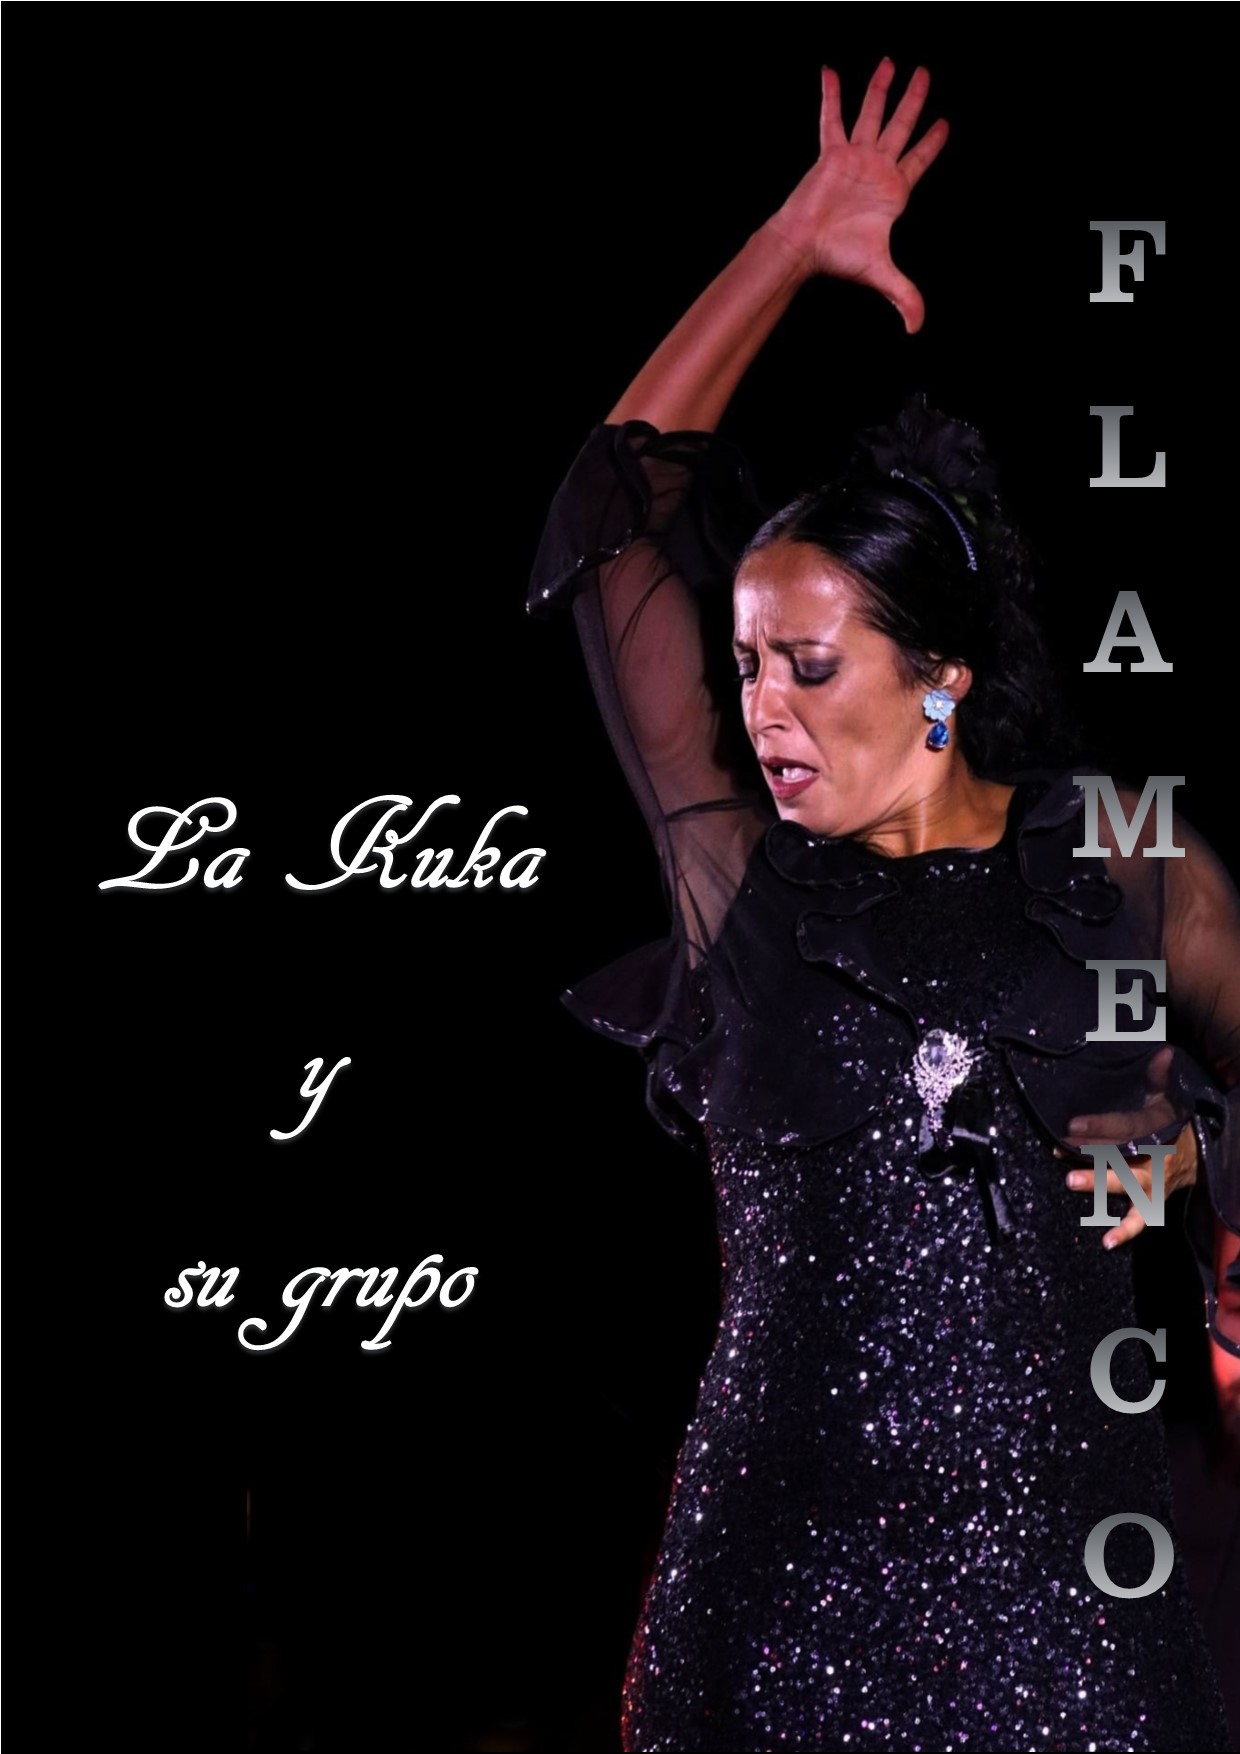 Espectáculo flamenc@s